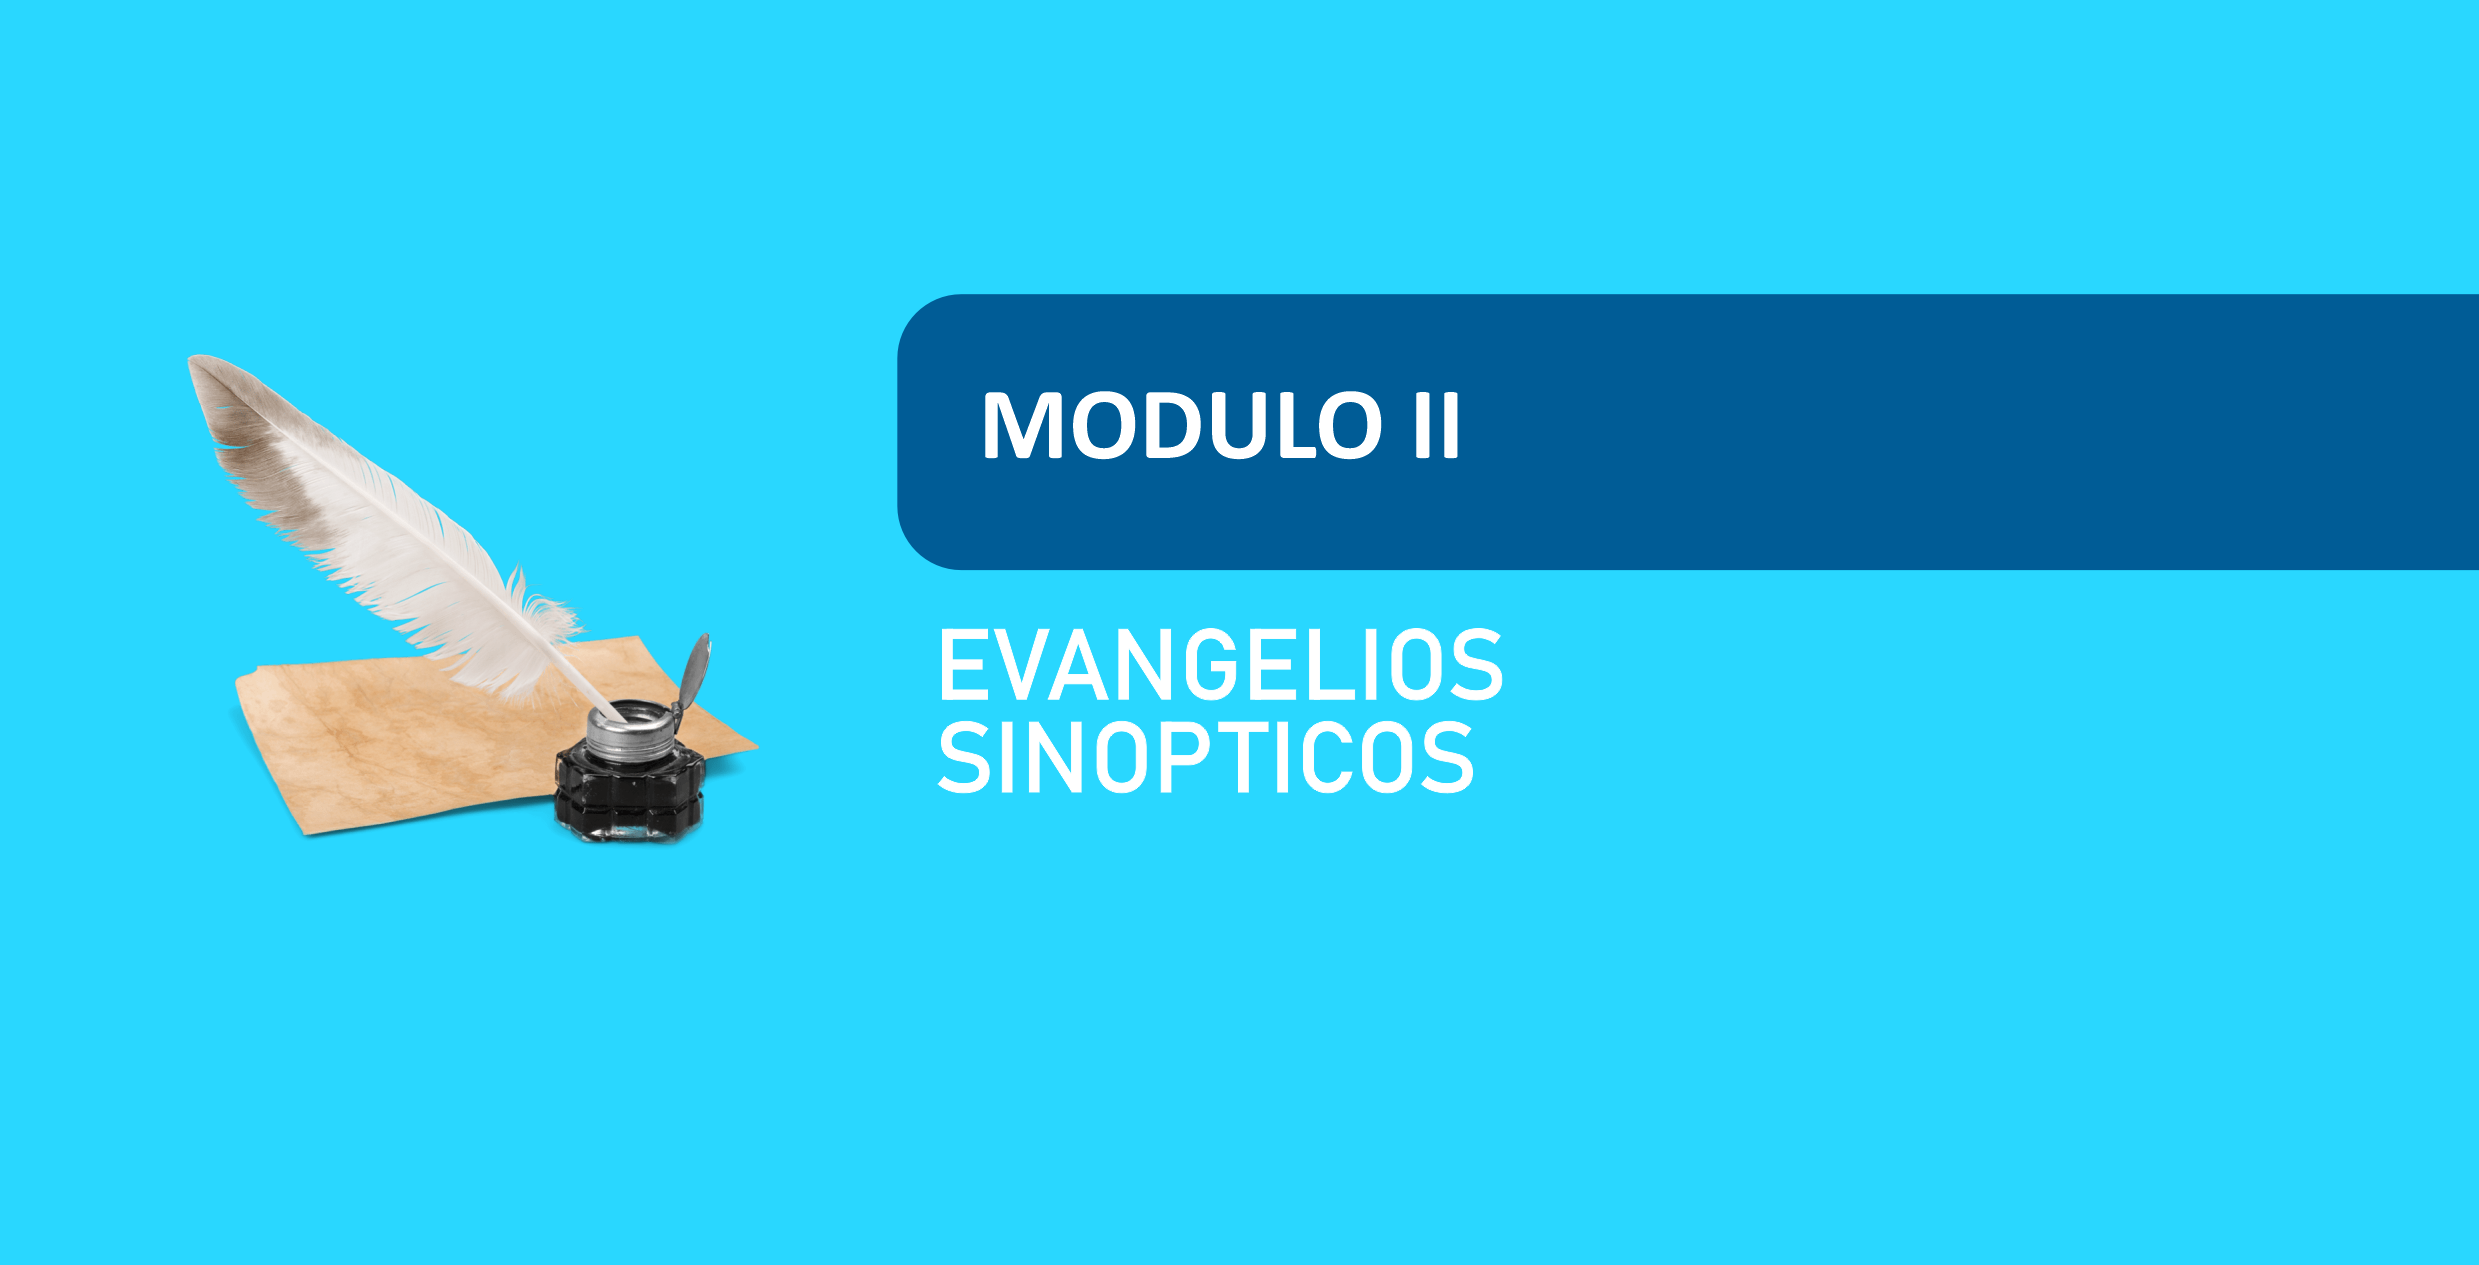 EVANGELIOS SINOPTICOS